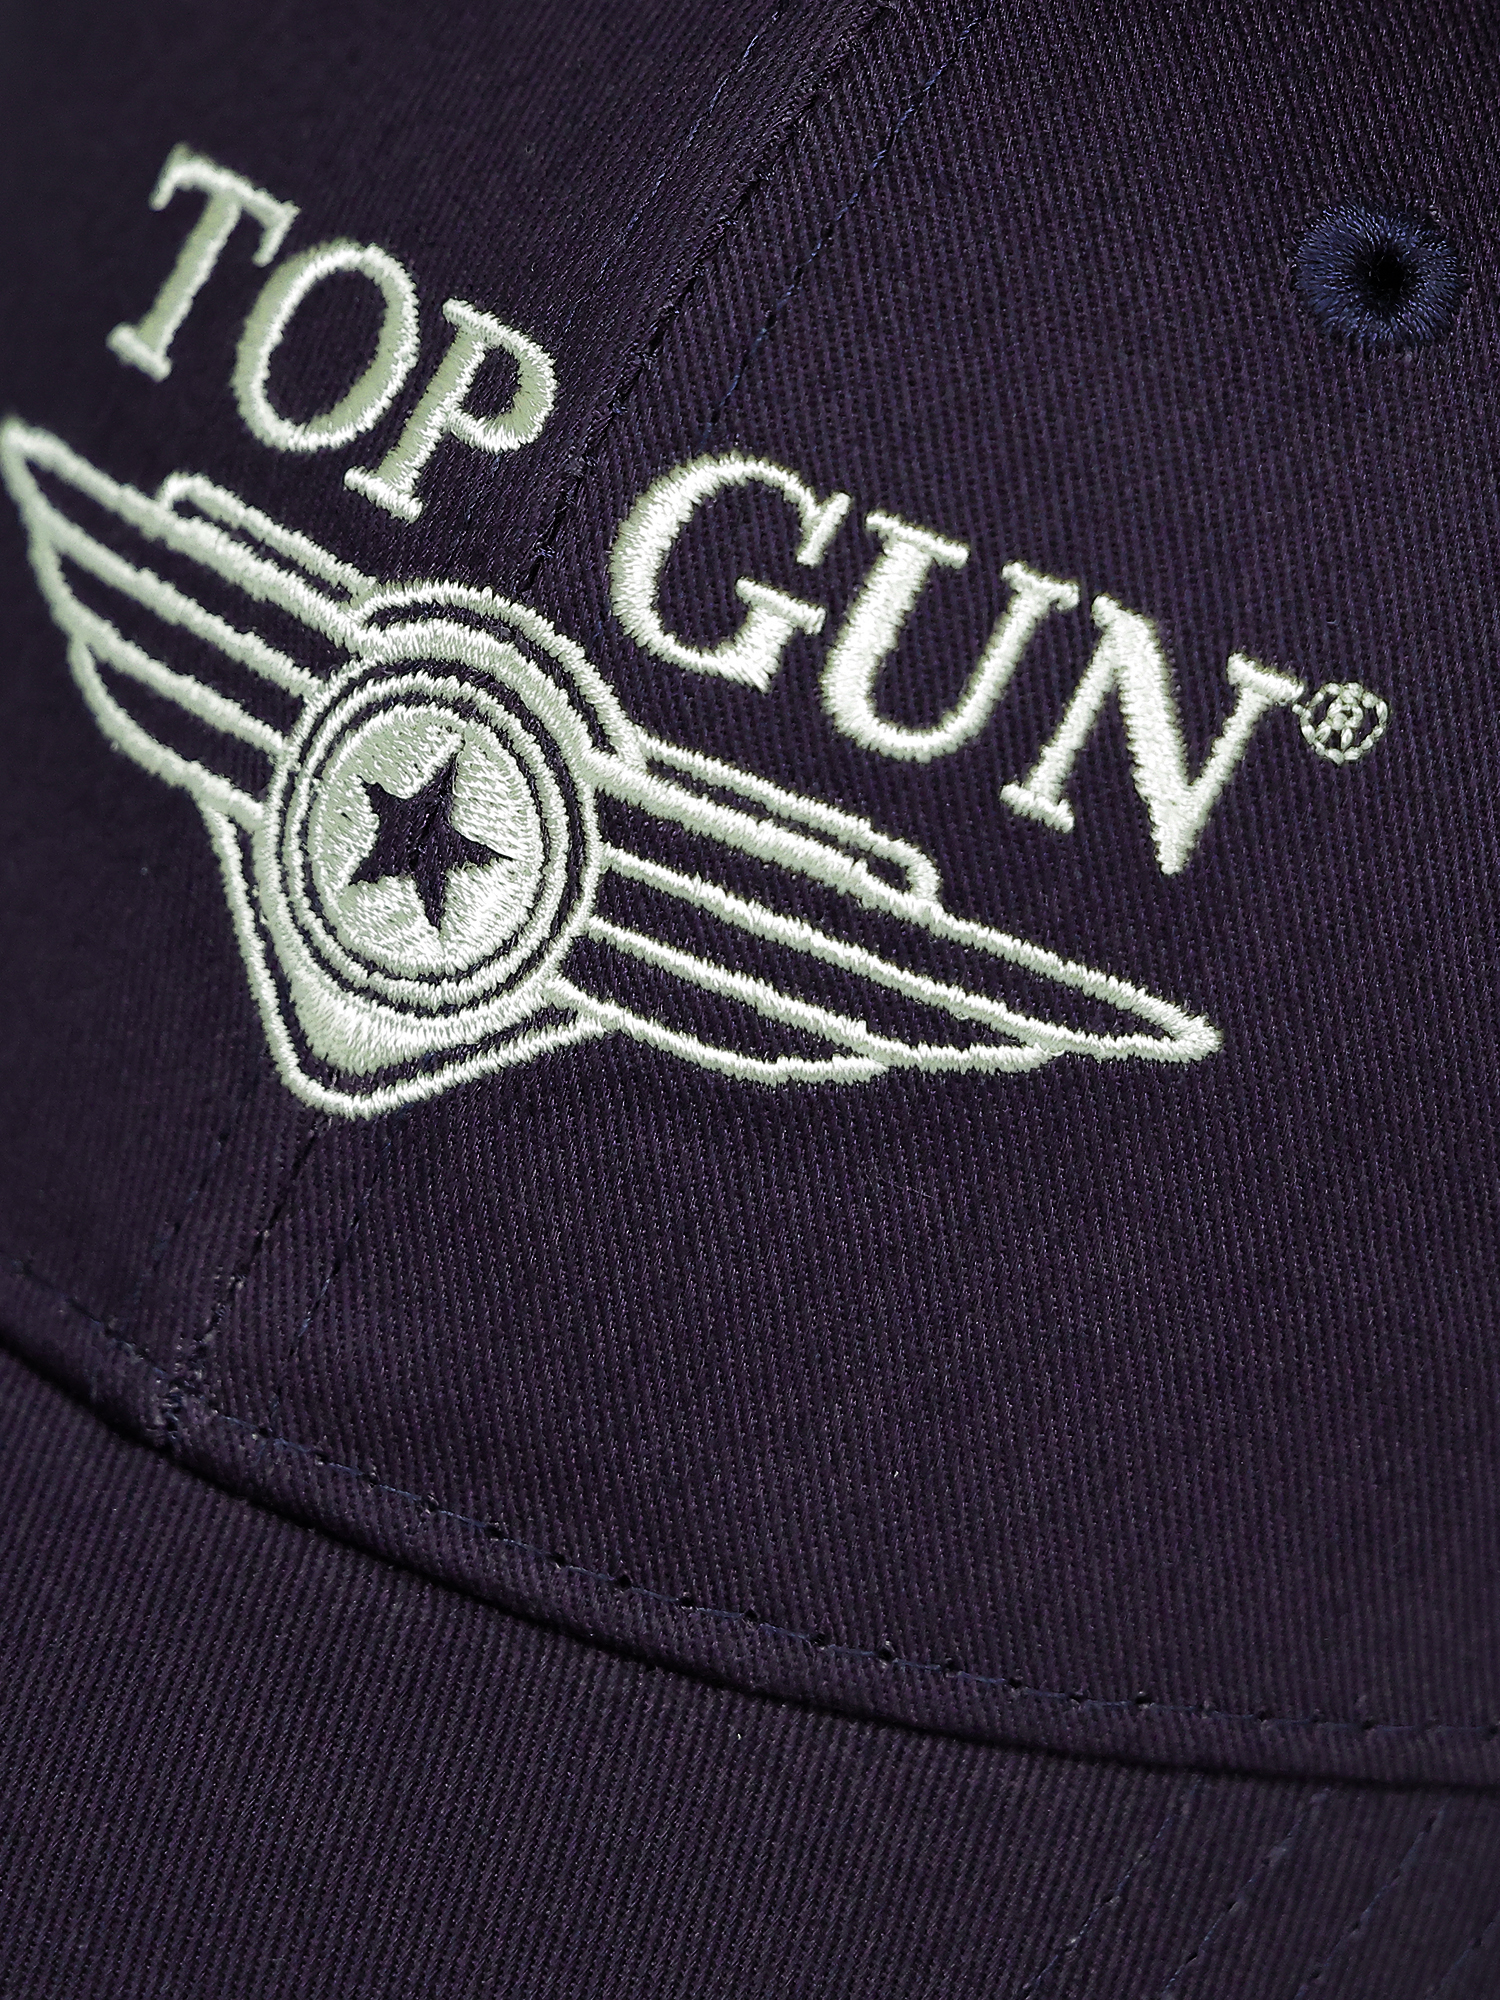 Deutschland Top Shop Gun® Cap Snapback |